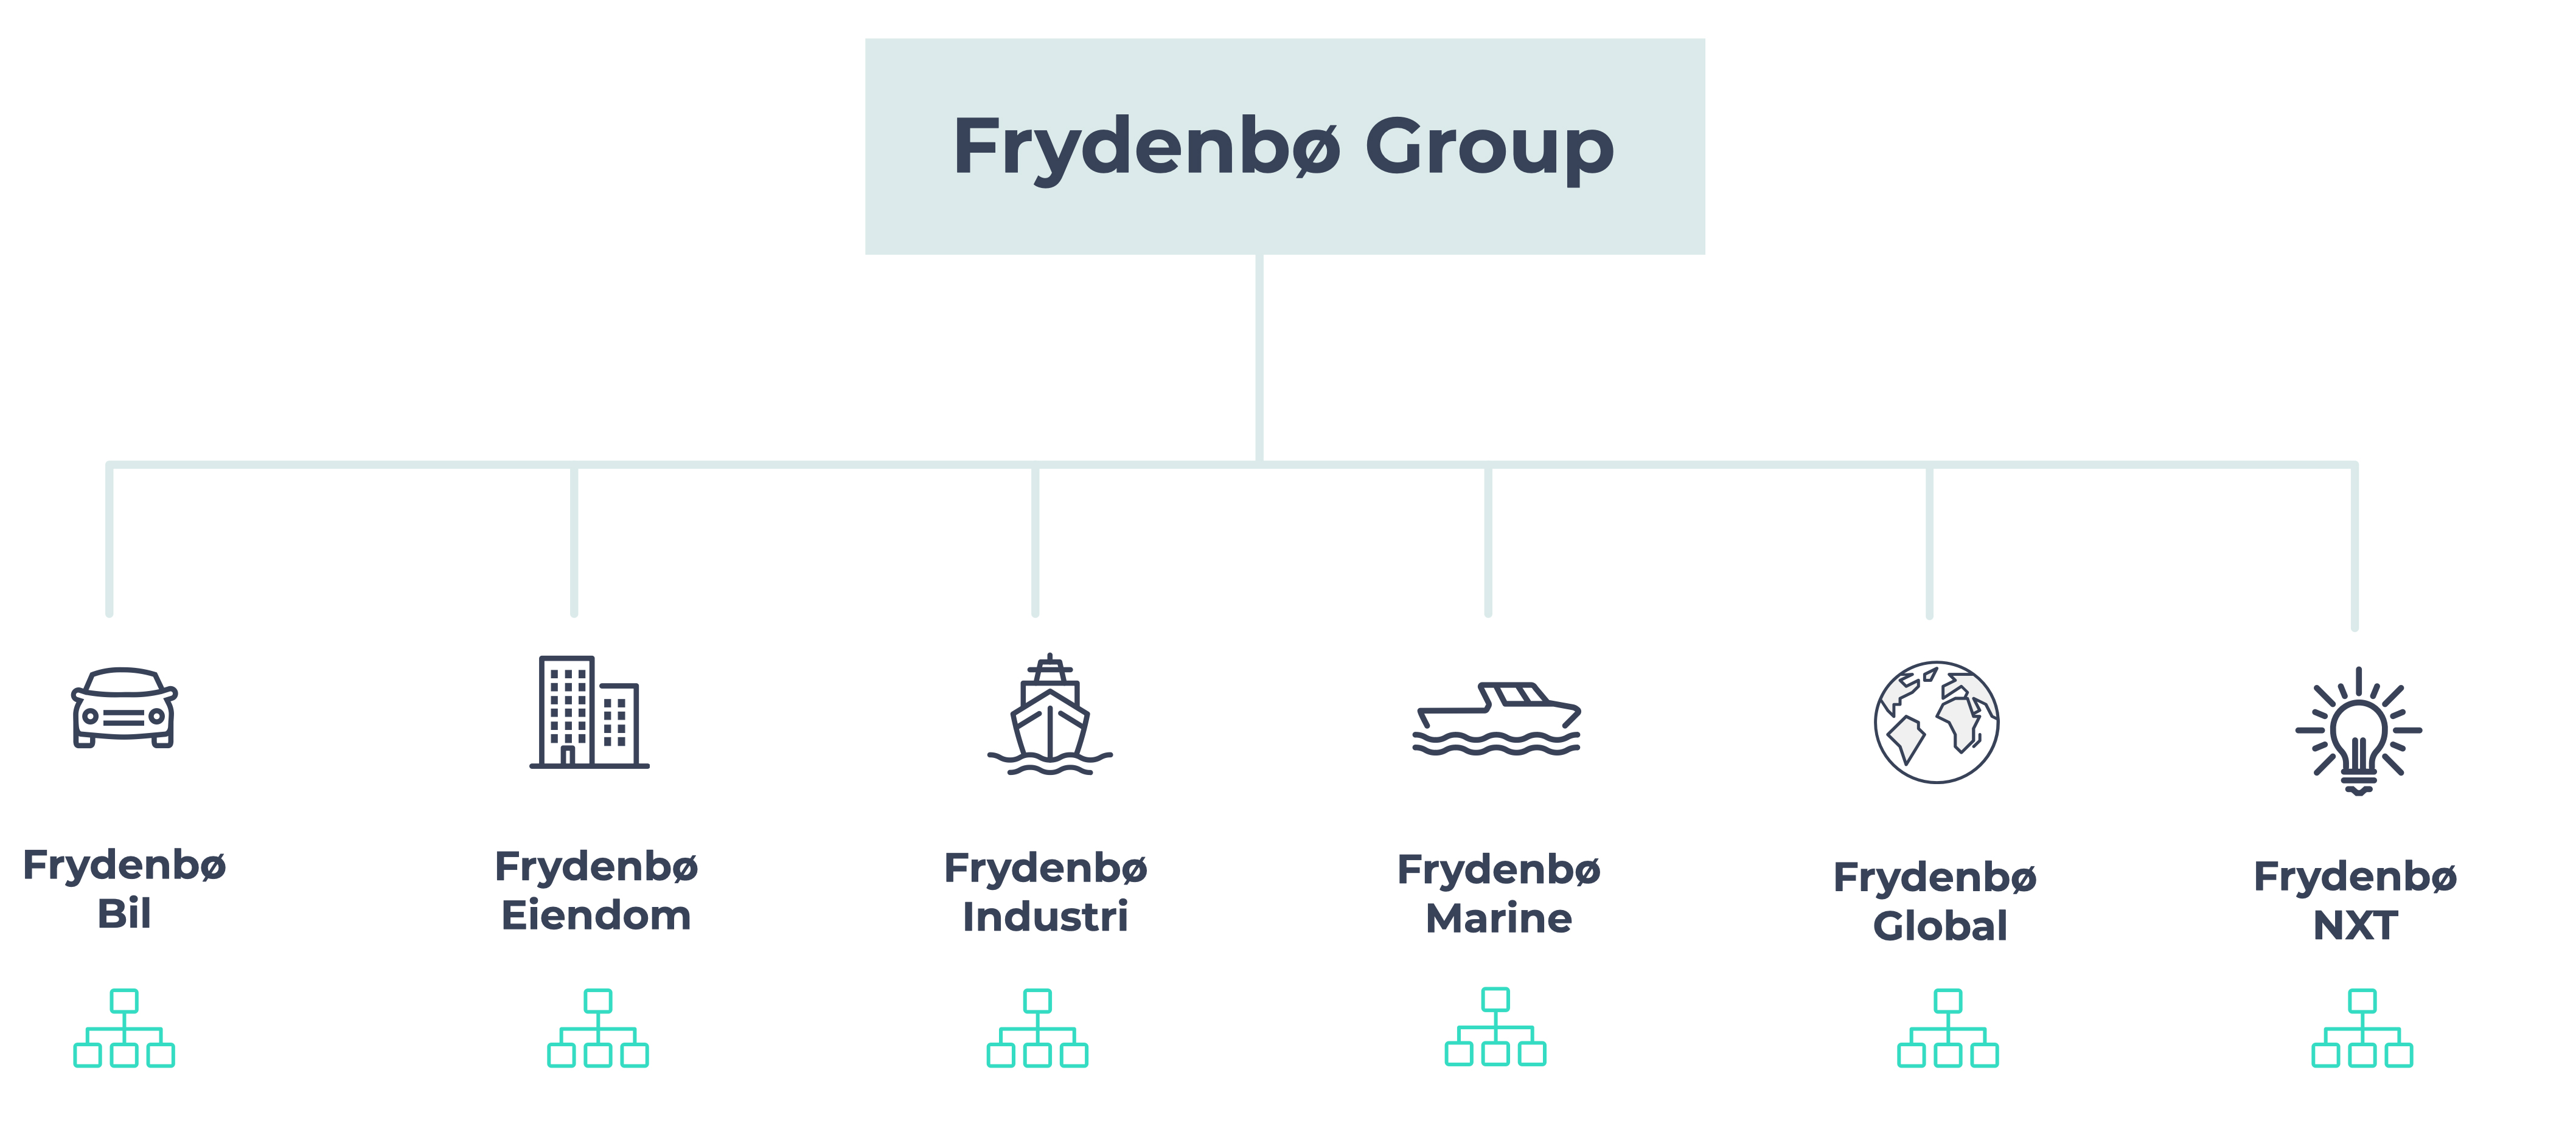 Frydenbø Group